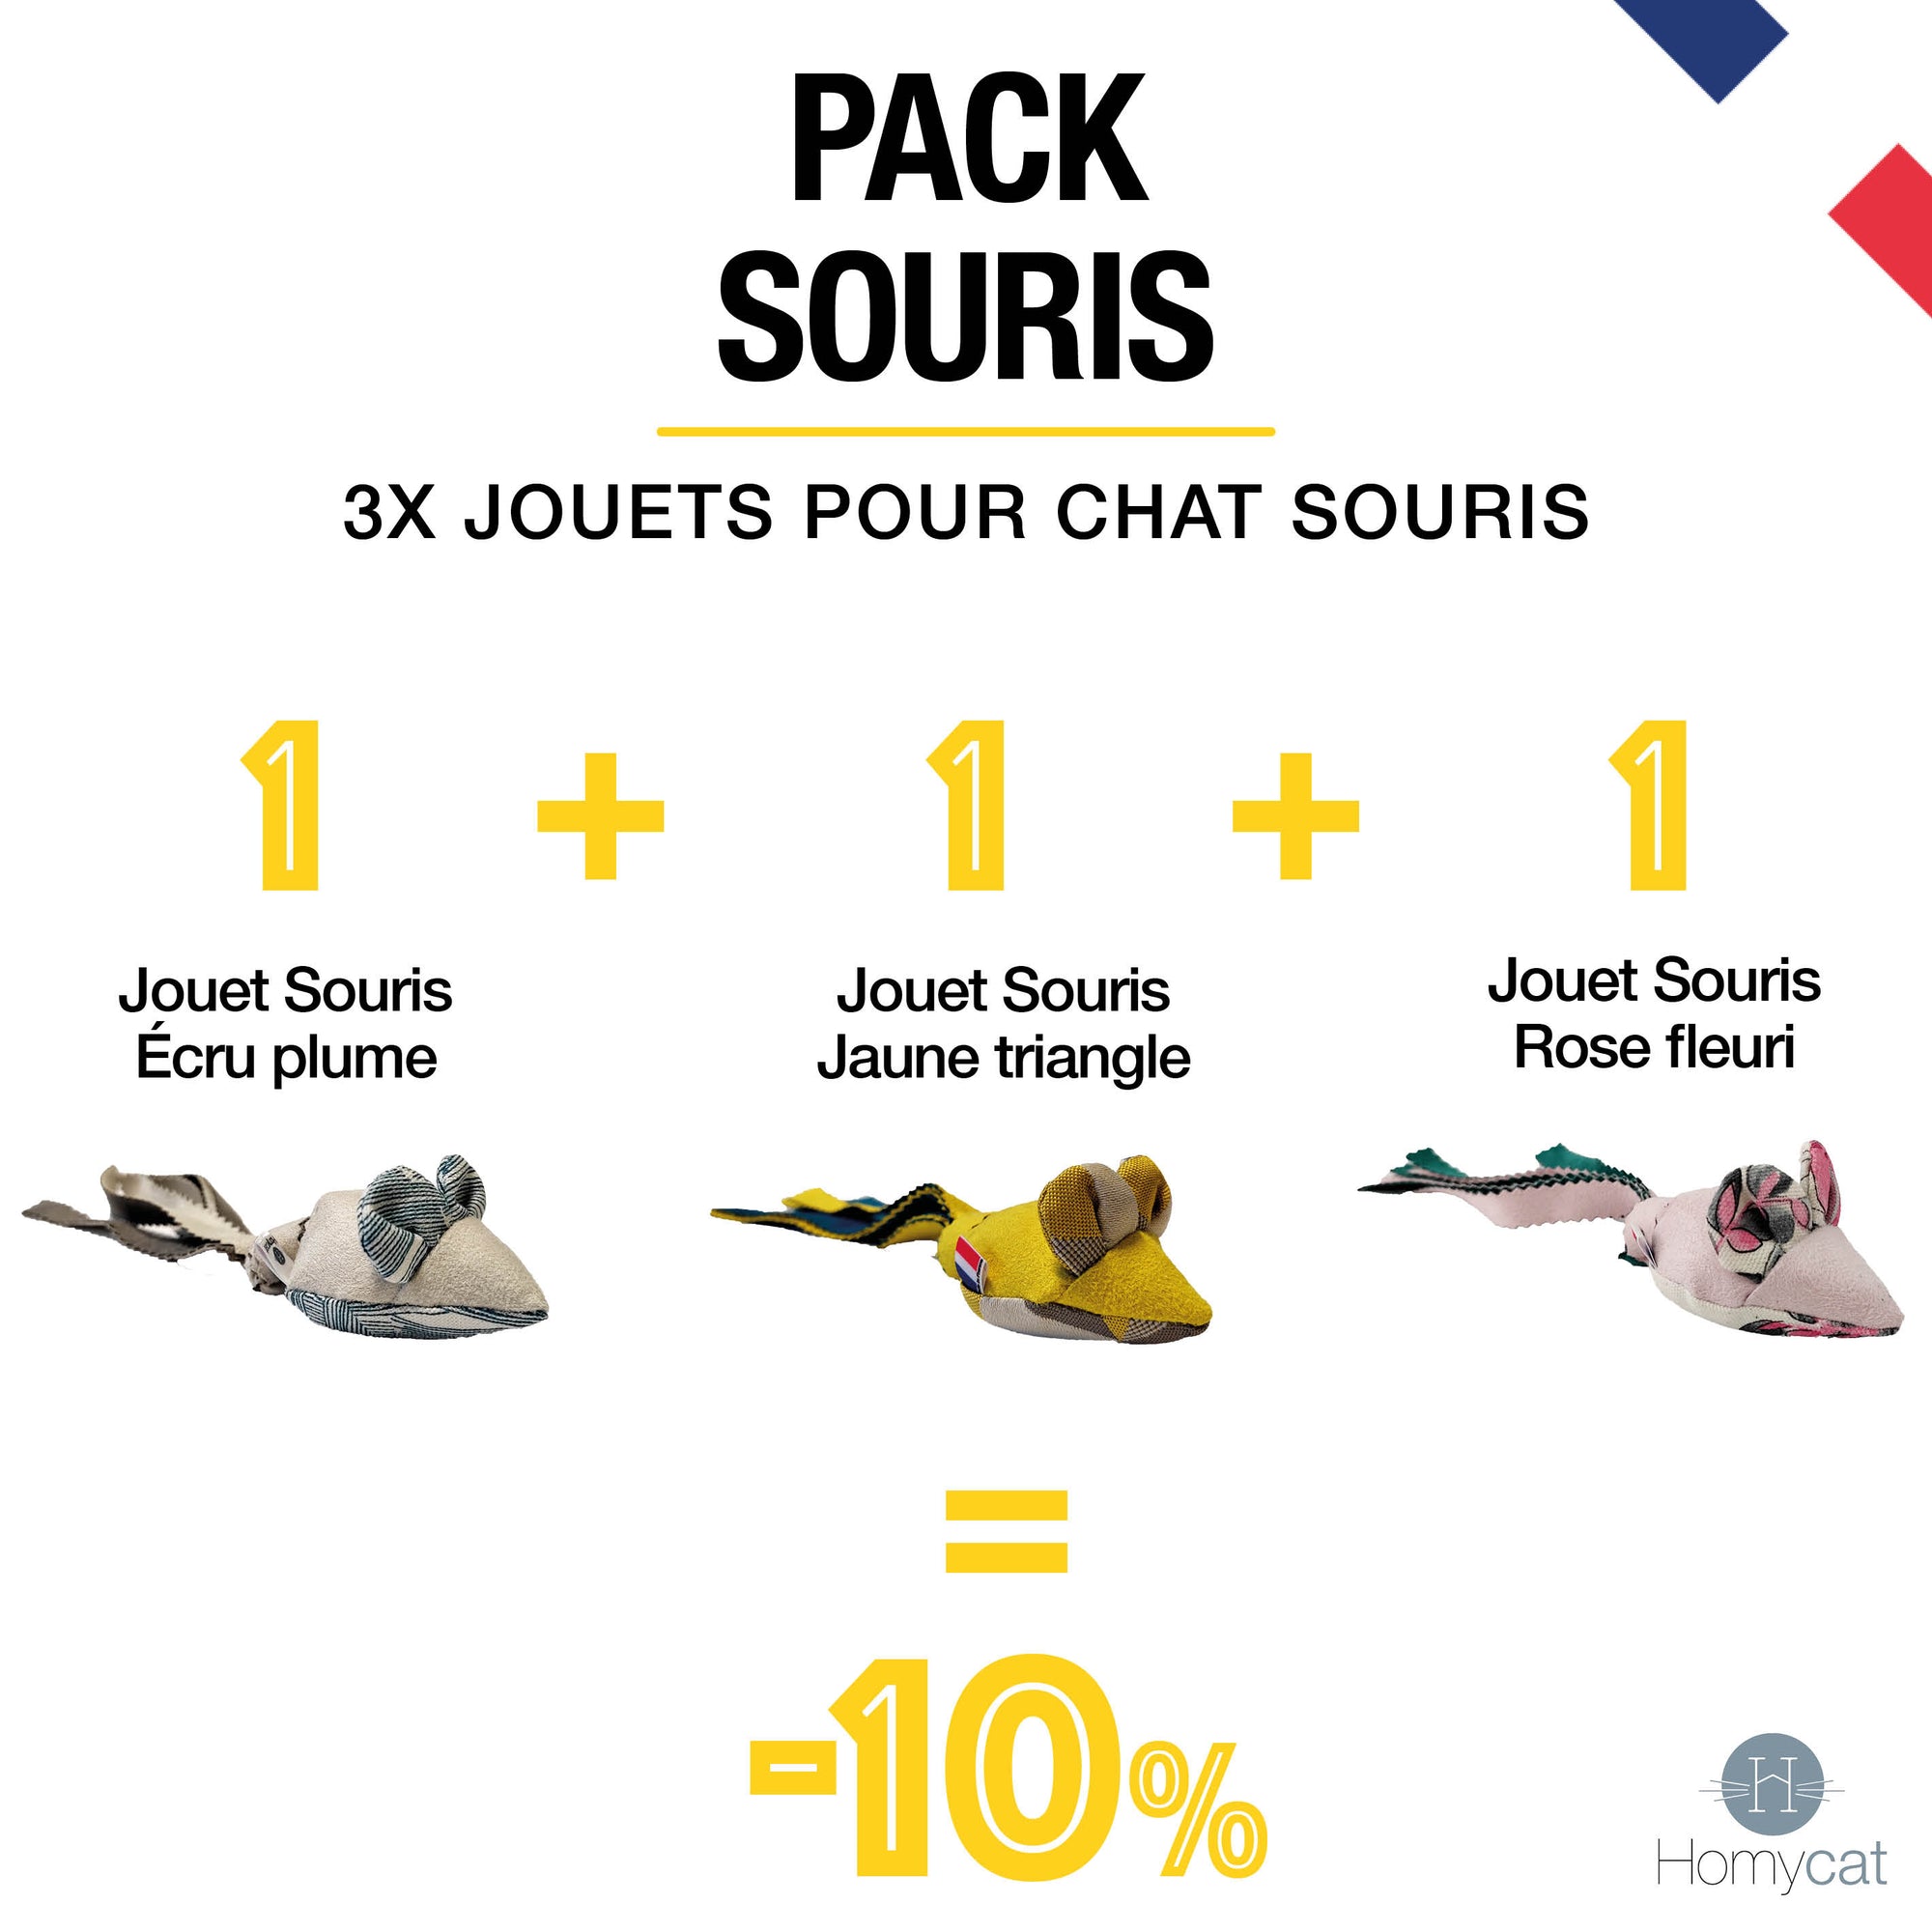 Pack Souris- 3 x Jouets Souris pour chats